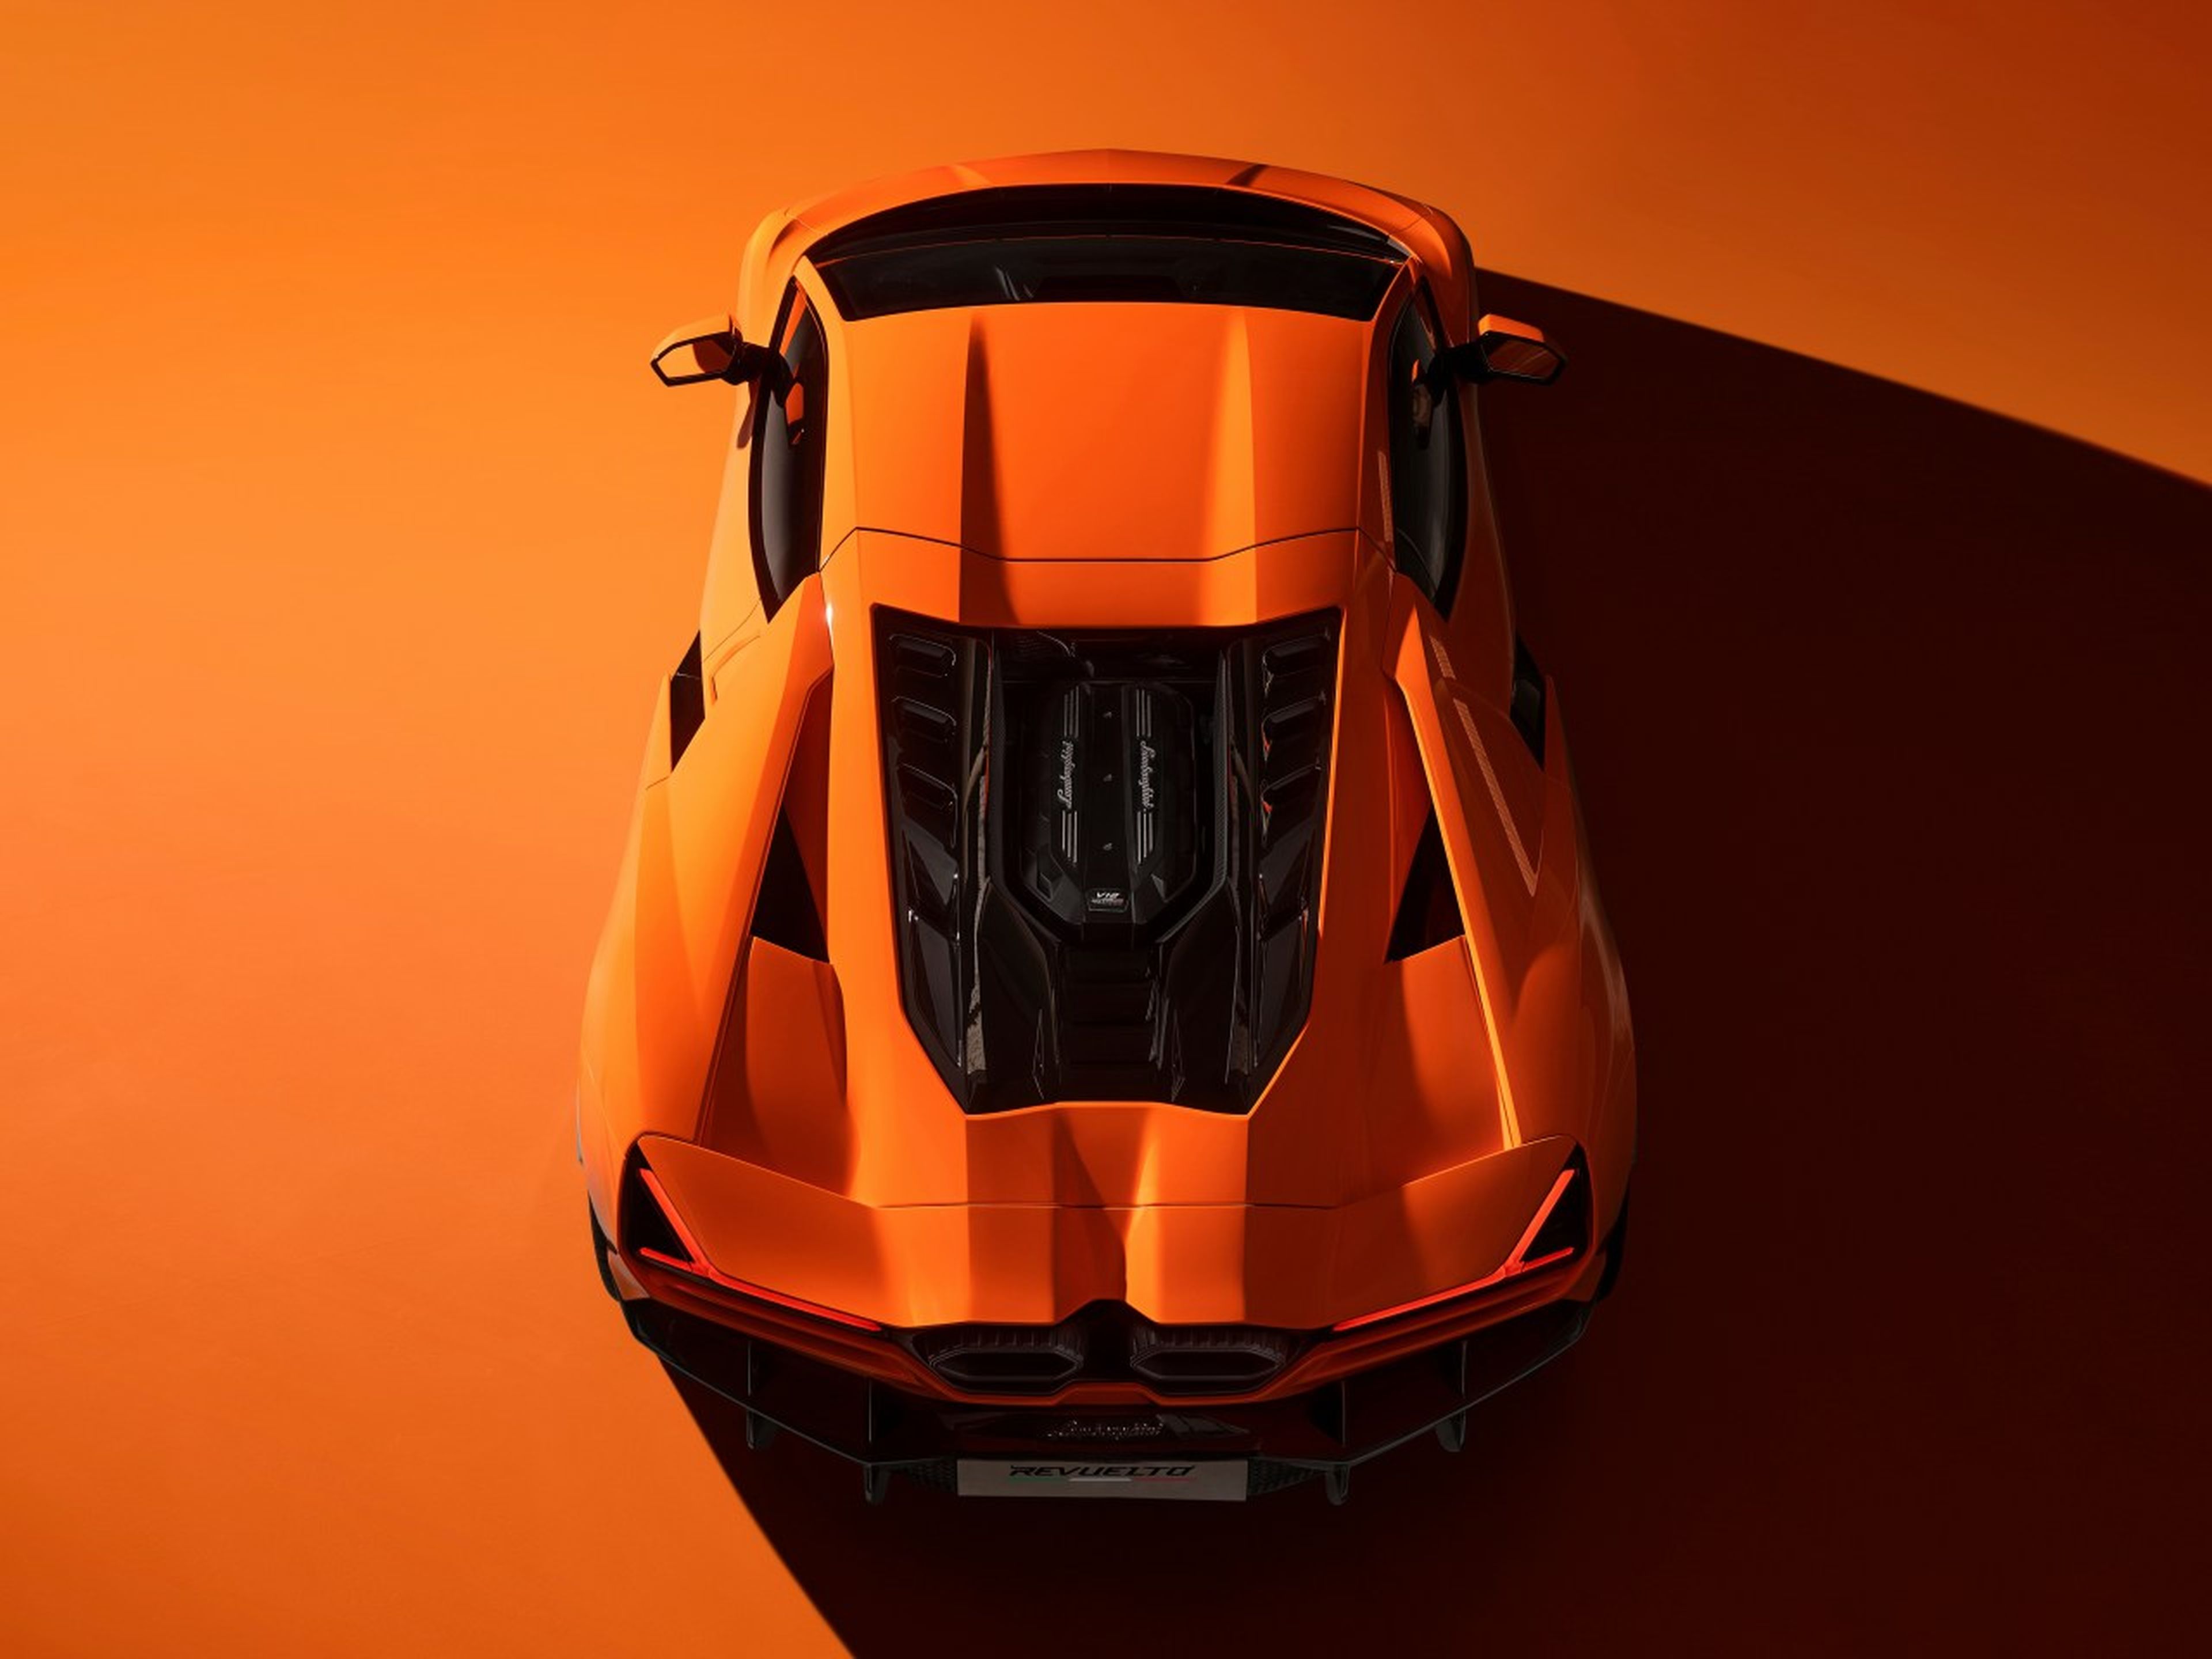 Lamborghini Revuelto exterior